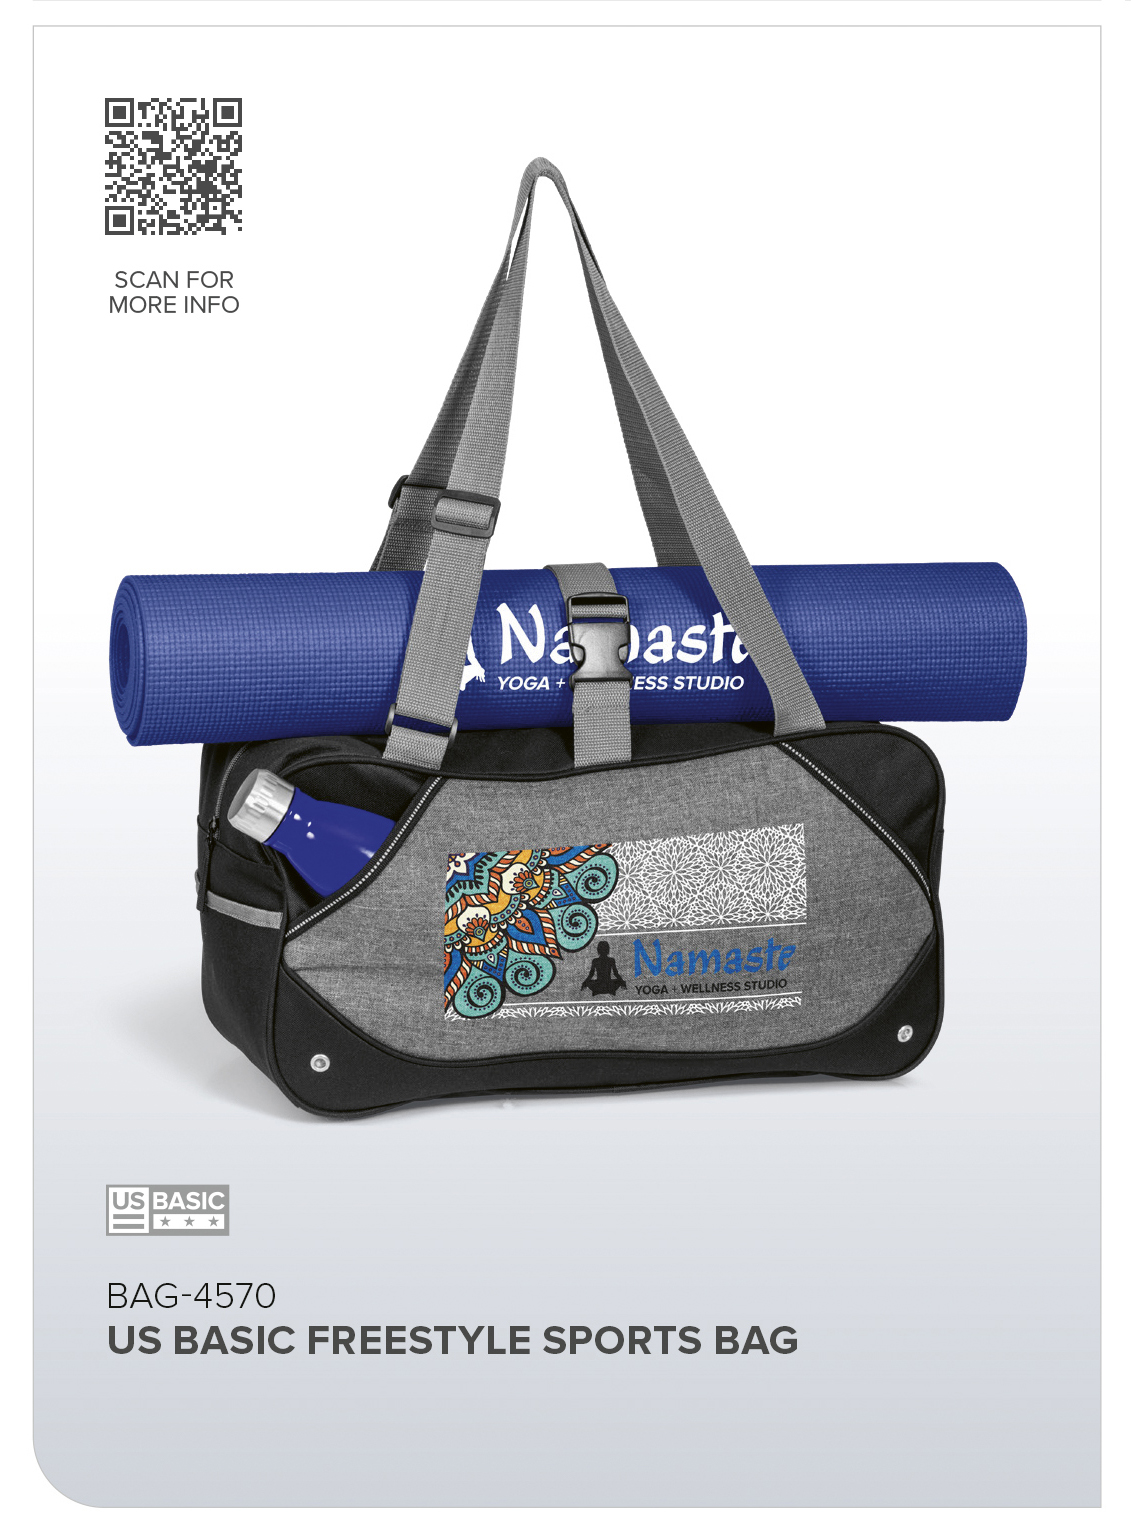 BAG-4570 - US Basic Freestyle Sports Bag - Catalogue Image